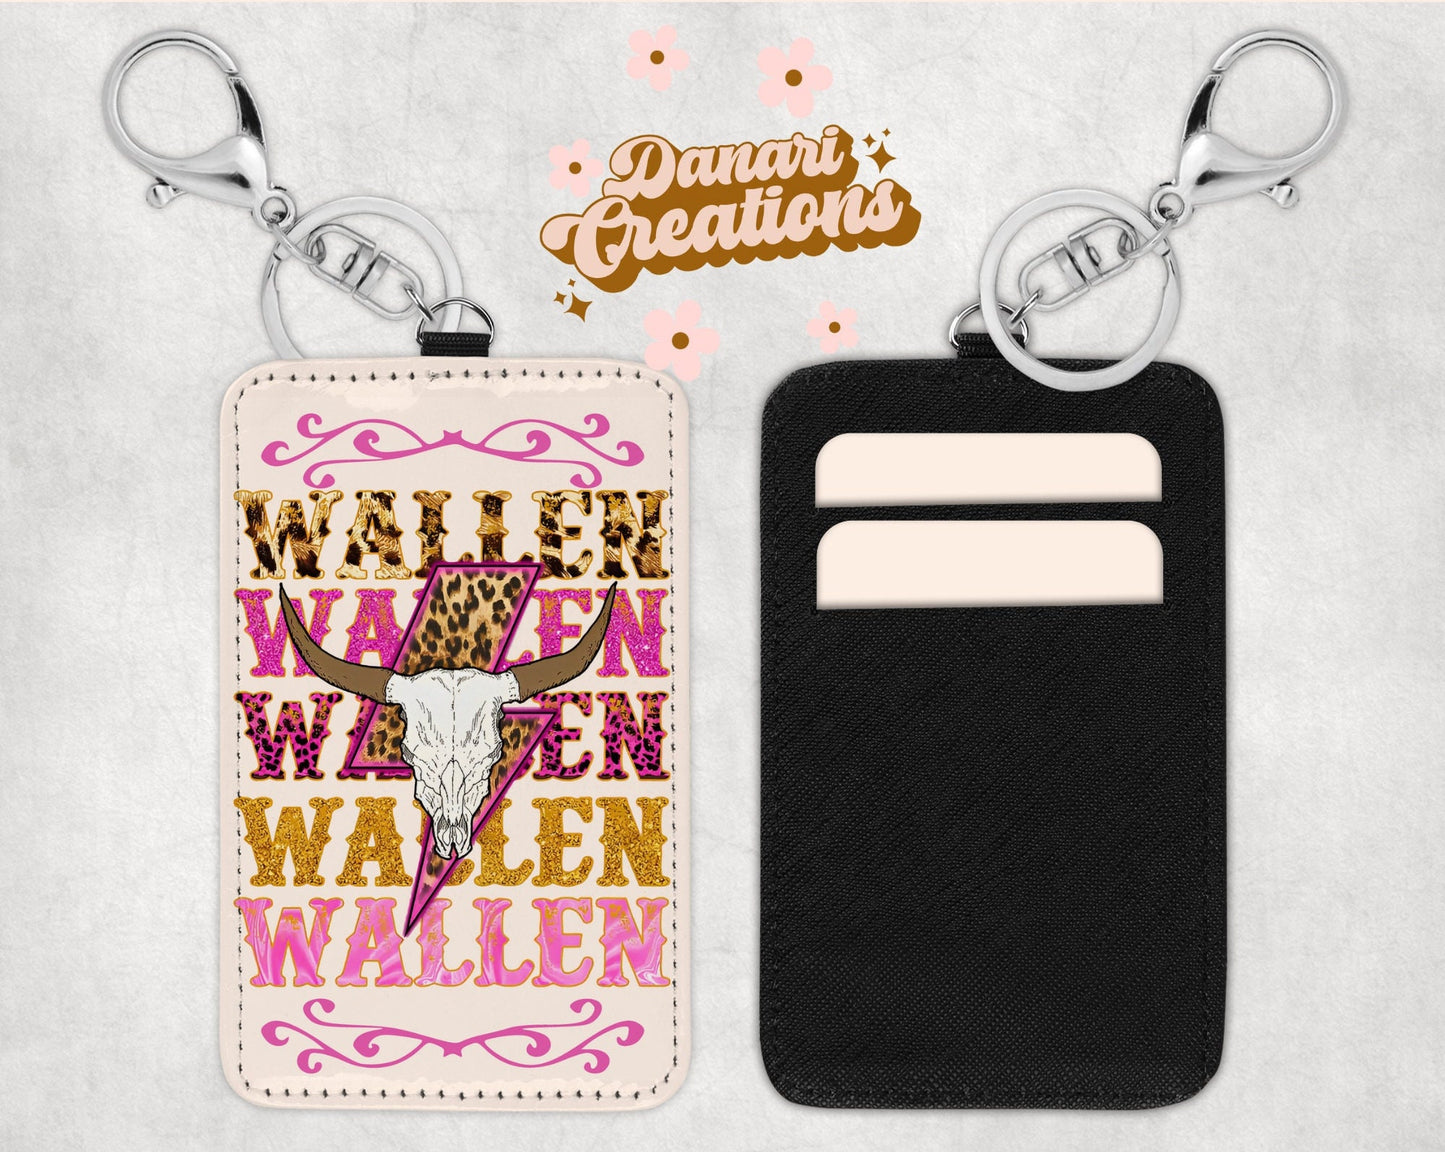 Wallen Card Holder Keychain